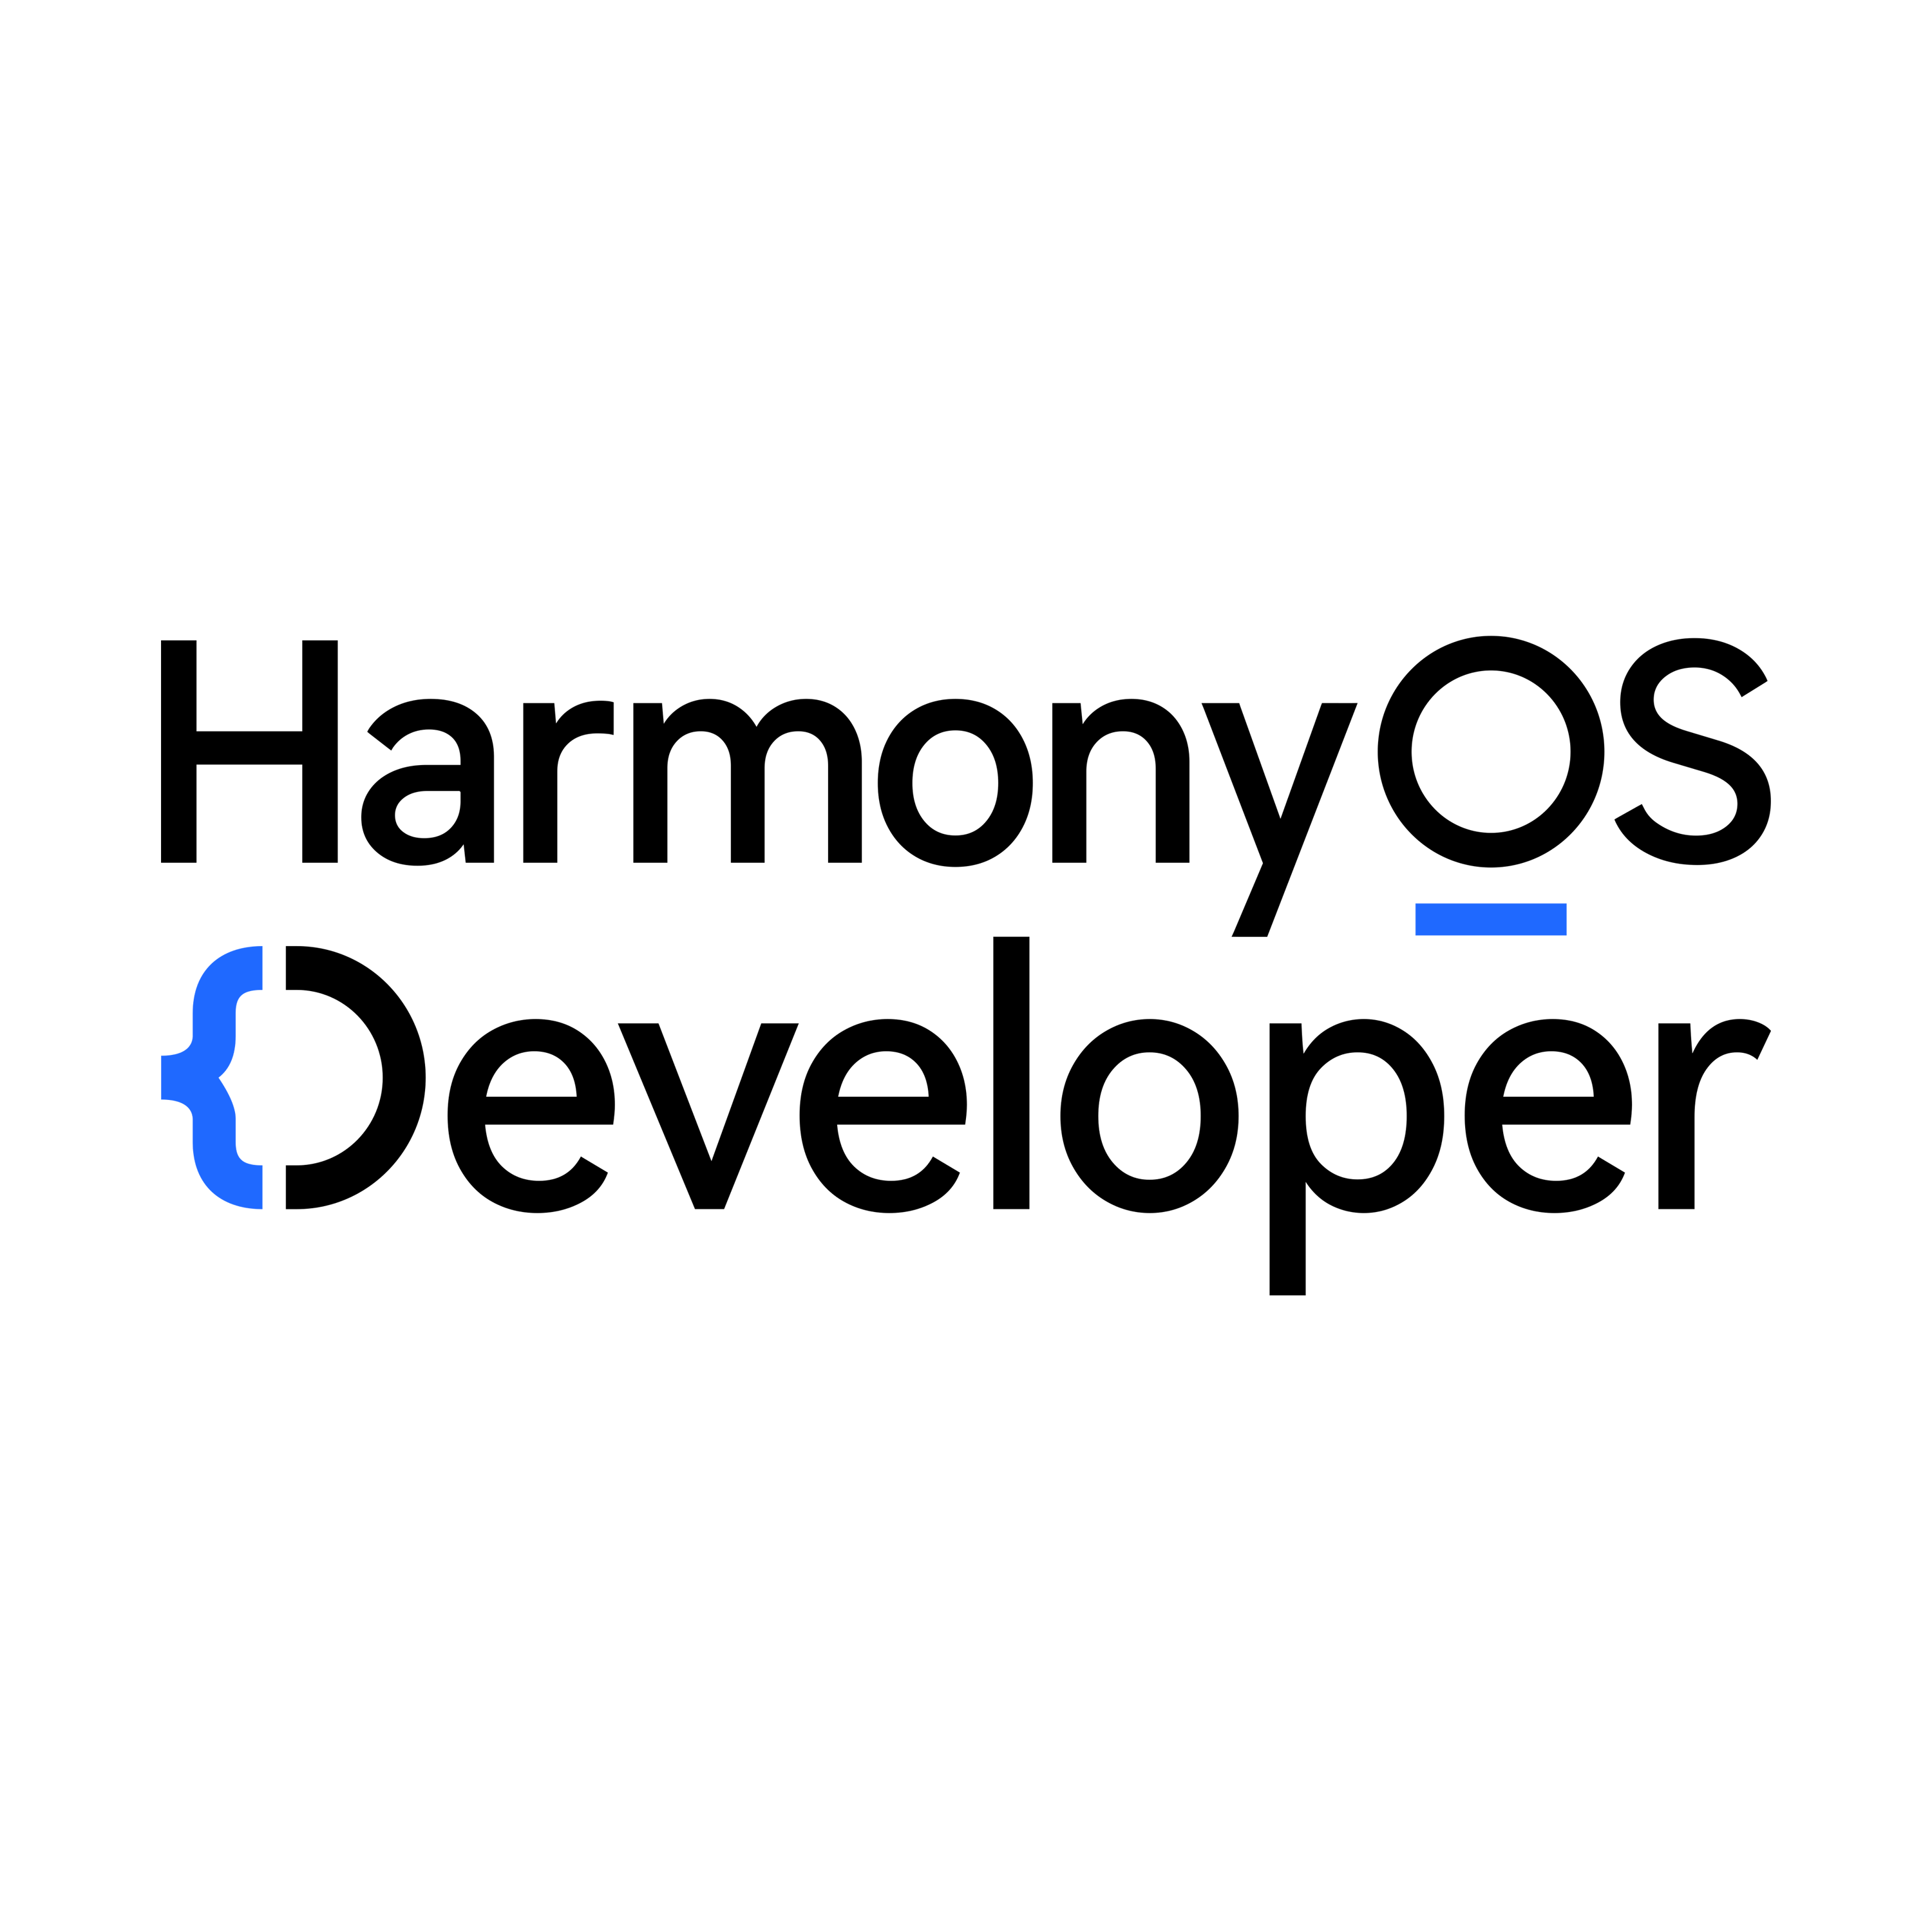 Harmony Os Developer Logo  Transparent Clipart